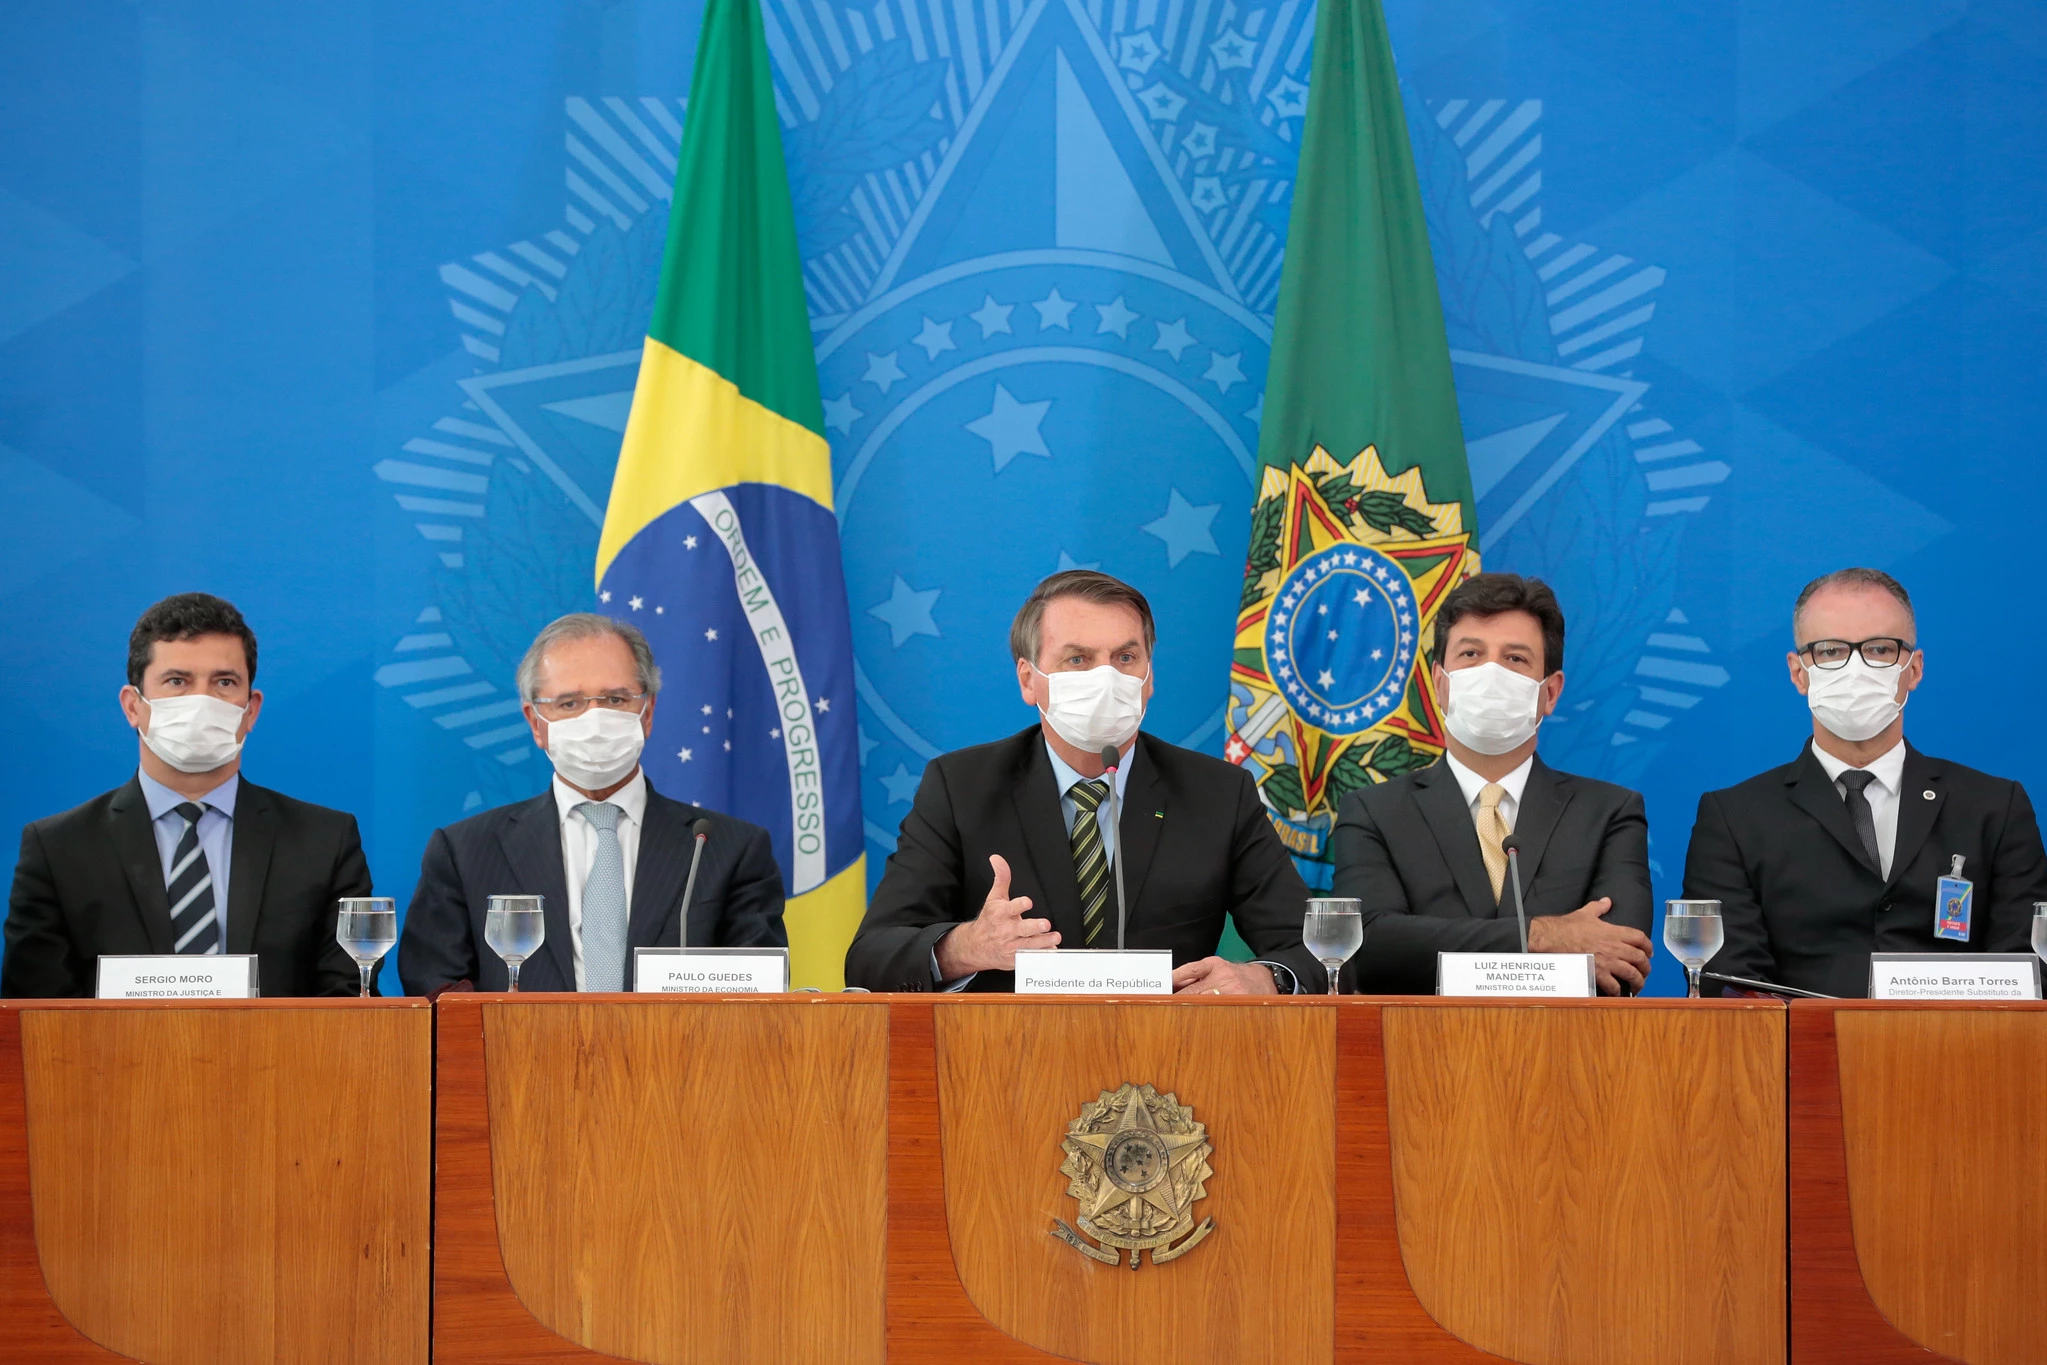 18/03/20. Jair Bolsonaro e Ministros de Estado se reúnem em coletiva de imprensa para falar sobre medidas adotadas pelo governo contra a expansão do coronavírus.